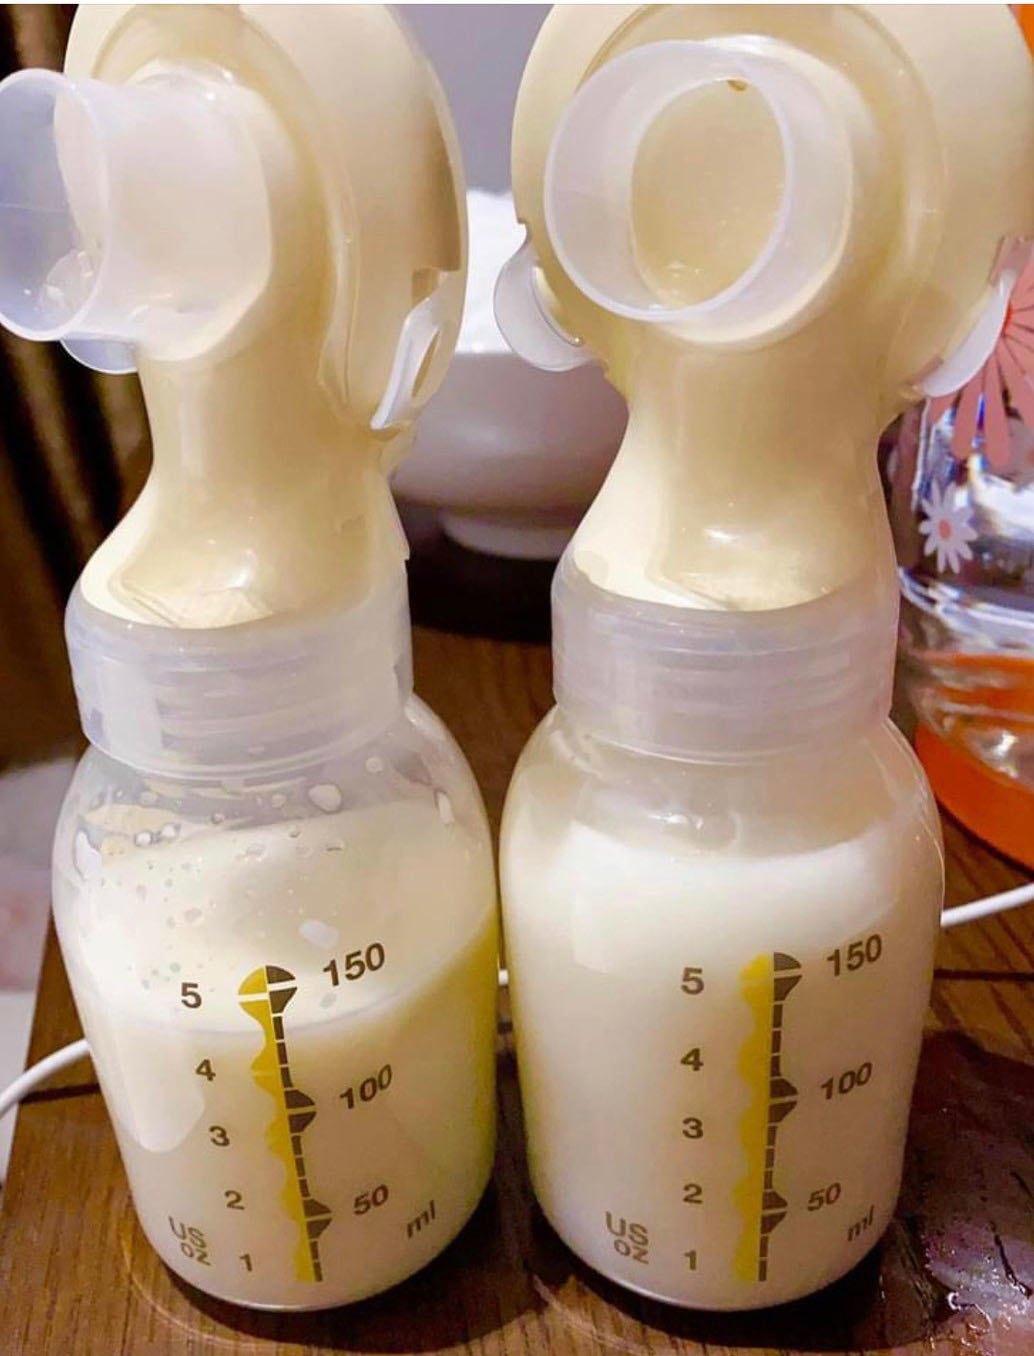 Kích sữa cho con sau sinh: Đàm Thu Trang, Hòa Mindy cùng bật khóc vì ngực rỉ máu - 6